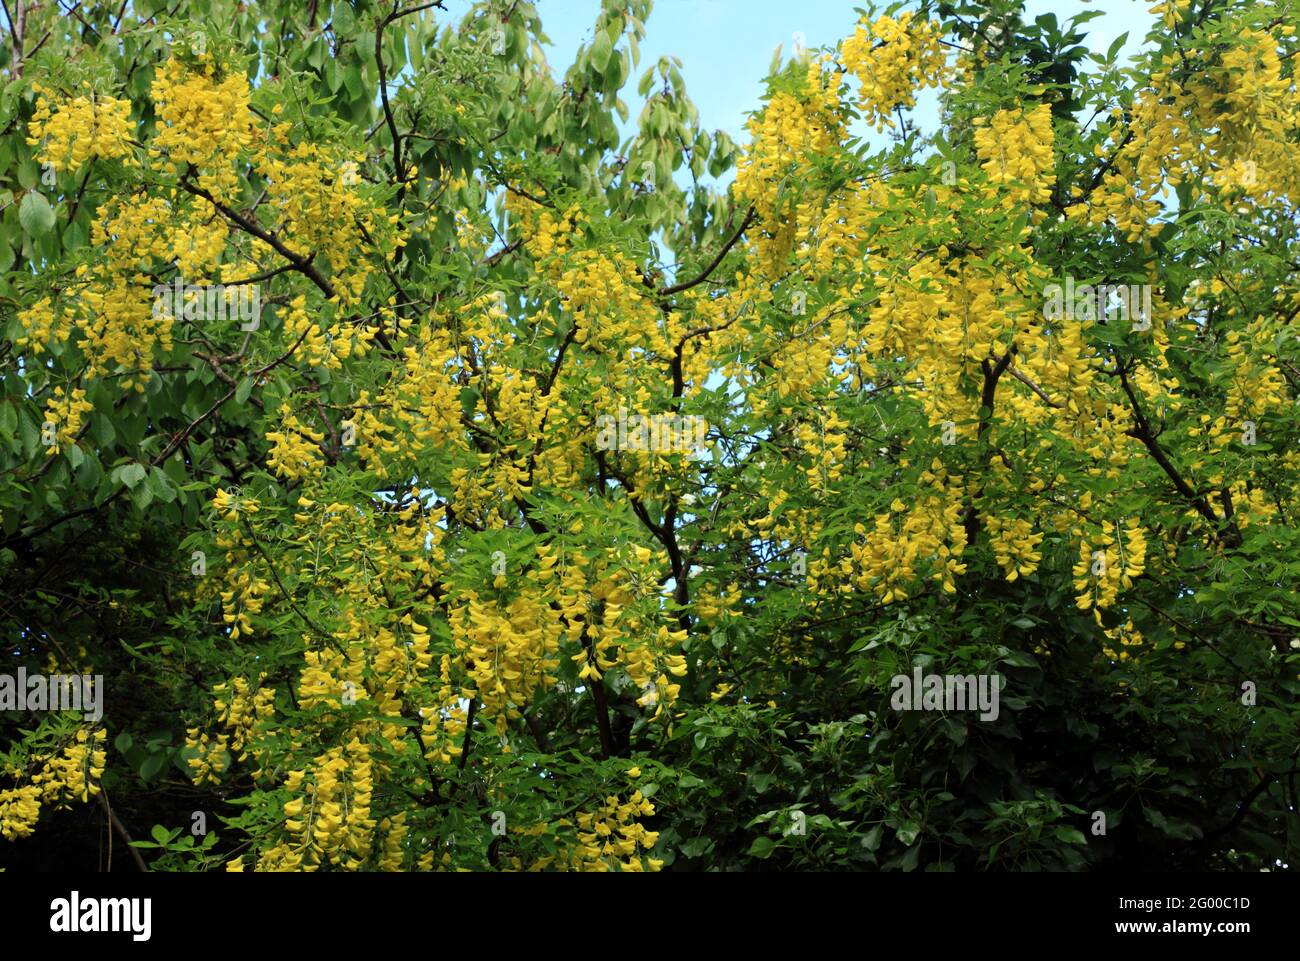 Laburnum x vossii 'Watereri', yellow flowers, tree Stock Photo